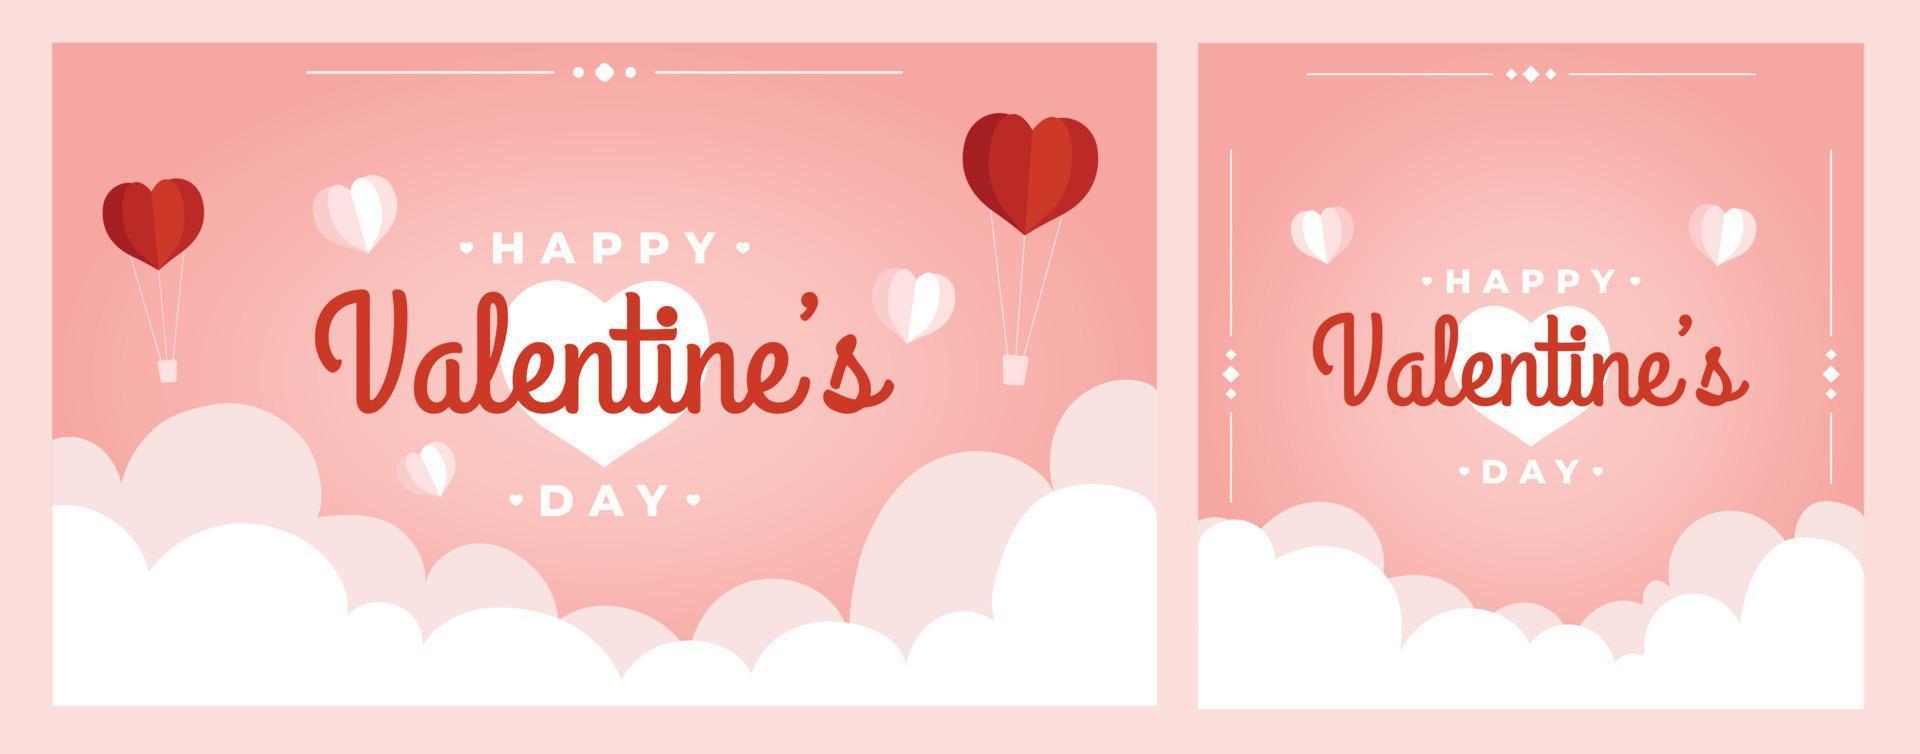 San Valentino sfondo biglietto di auguri poster banner con cuori romantici elemento rosa vettore